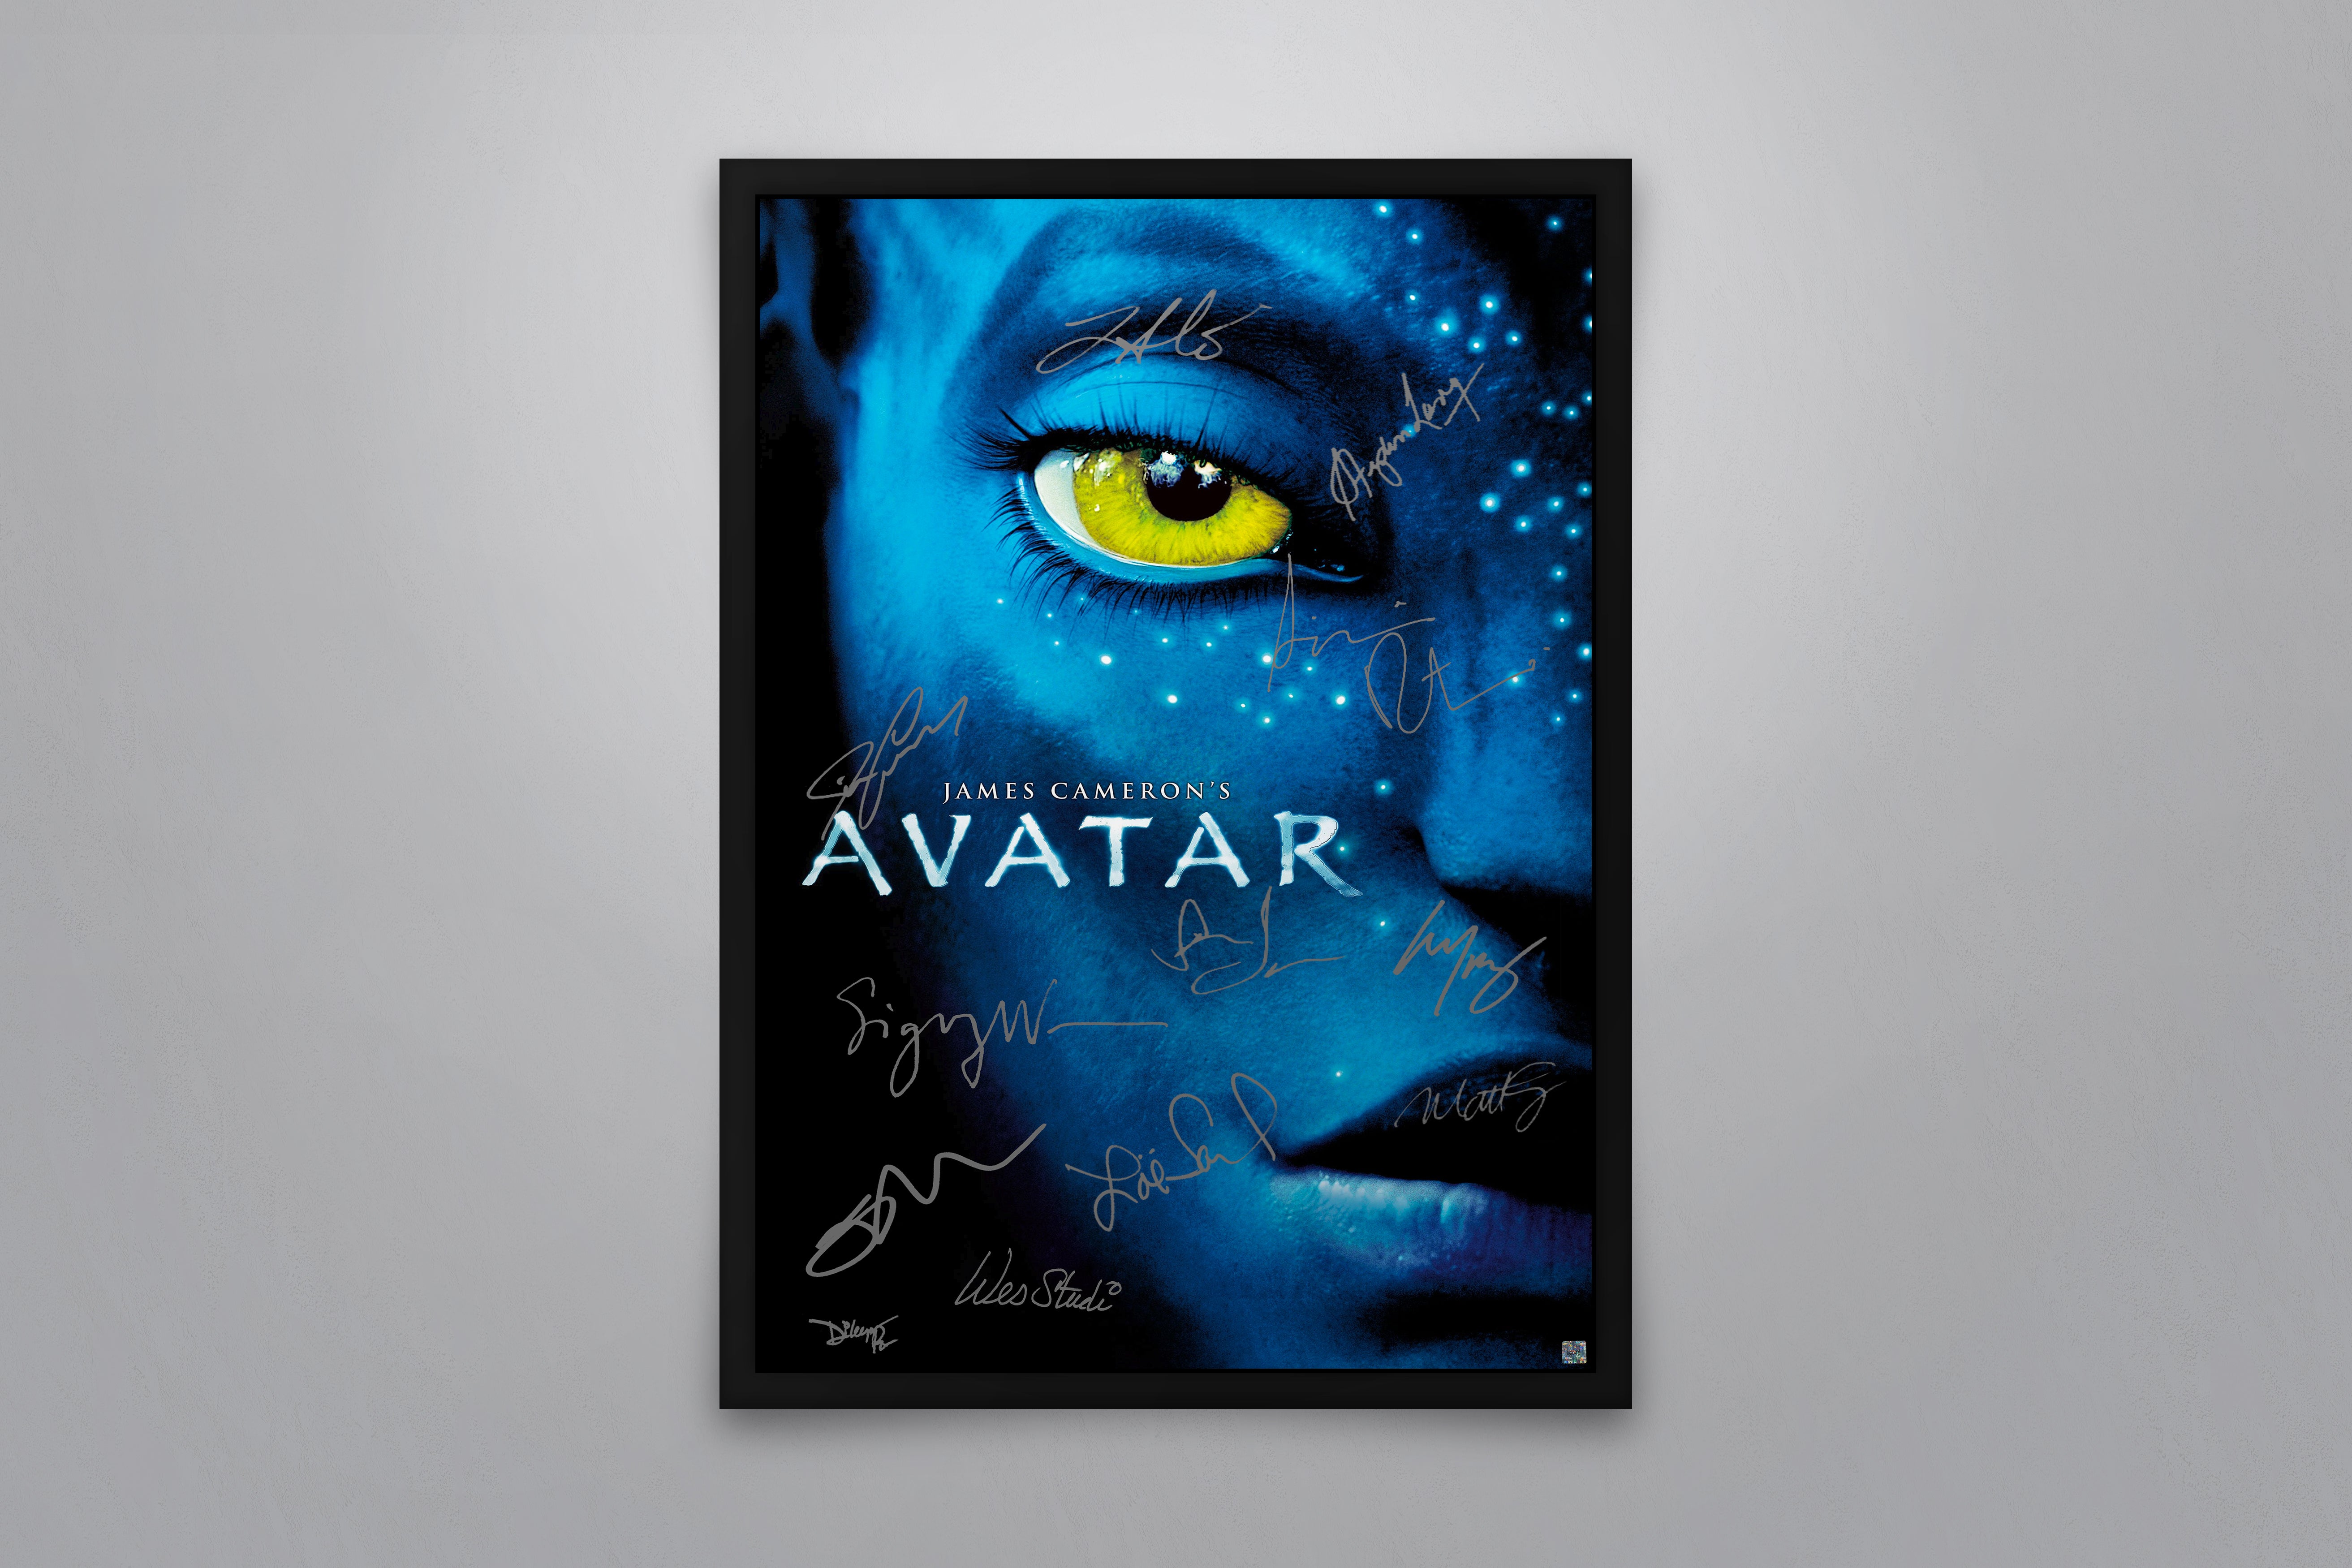 CLOSED] Acpik - [100 R$] Selling Avatar Icons! - Portfolios